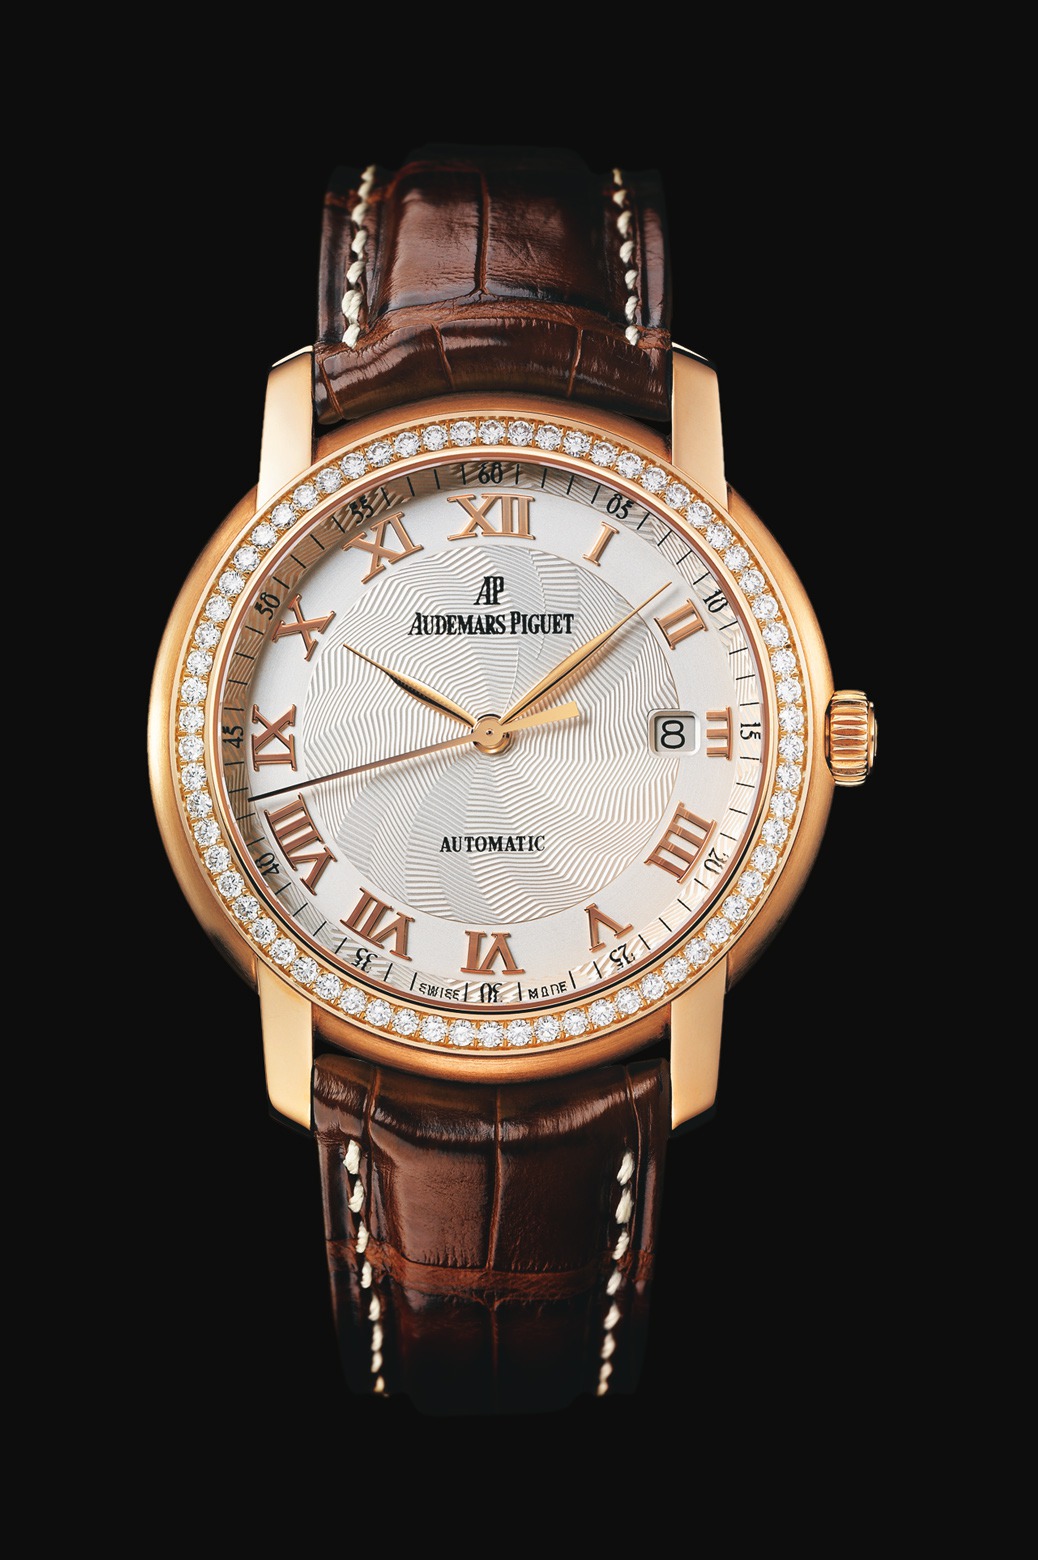 Audemars Piguet Jules Audemars Automatic Diamonds Pink Gold watch REF: 15140OR.ZZ.A088CR.03